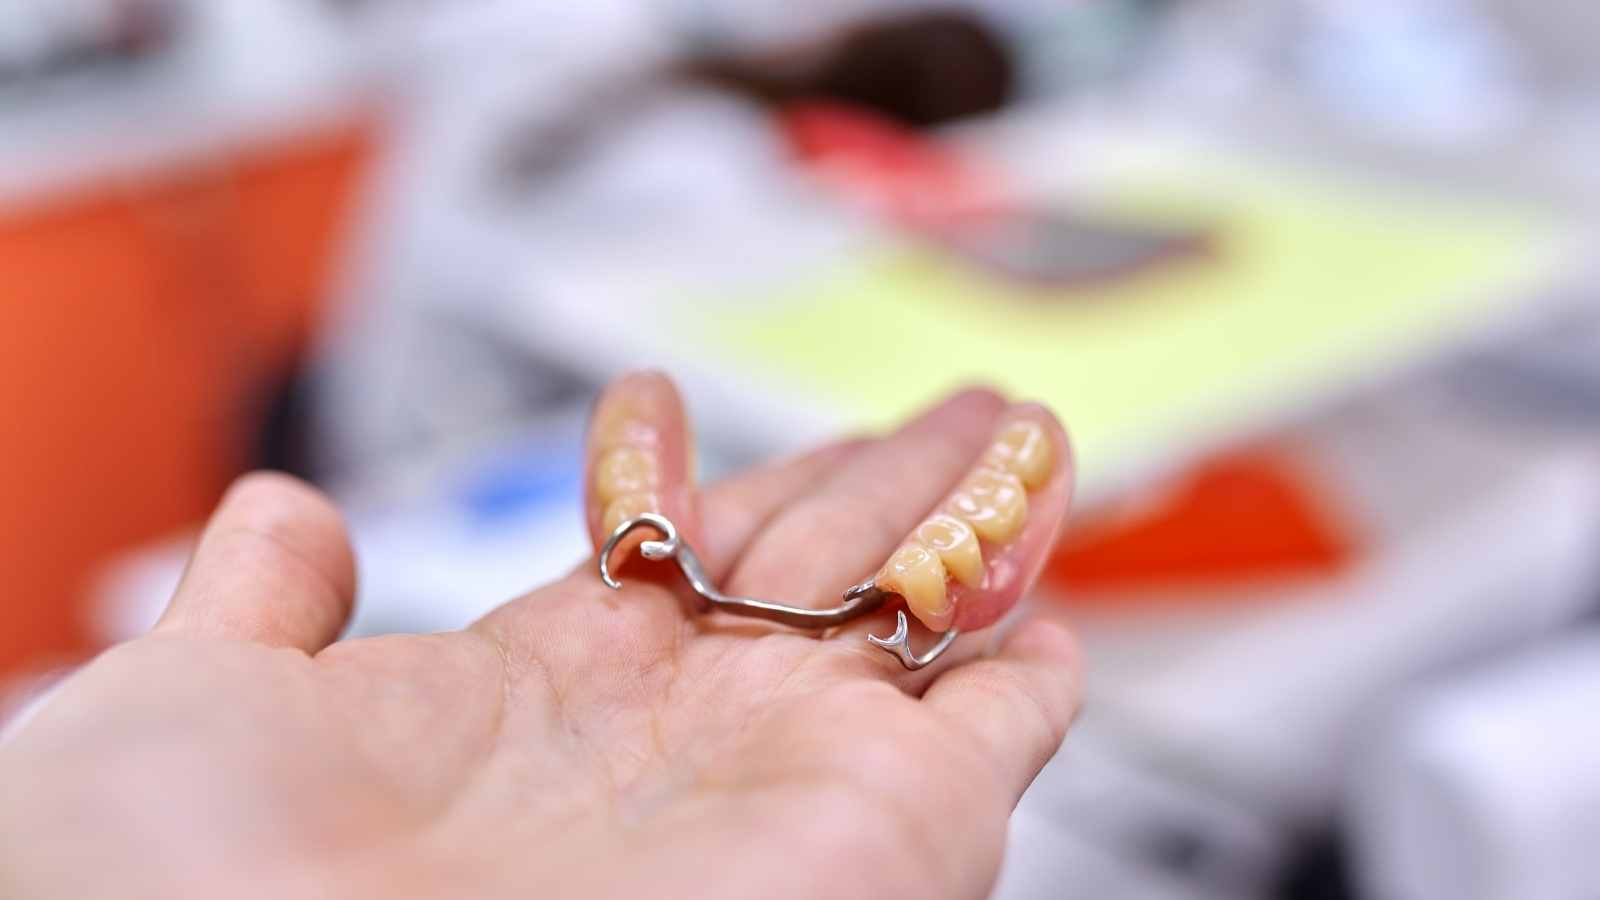 Zahnimplantat-Modell, Zahnbrücke in der Hand, Hintergrund der Zahnarztpraxis⁠